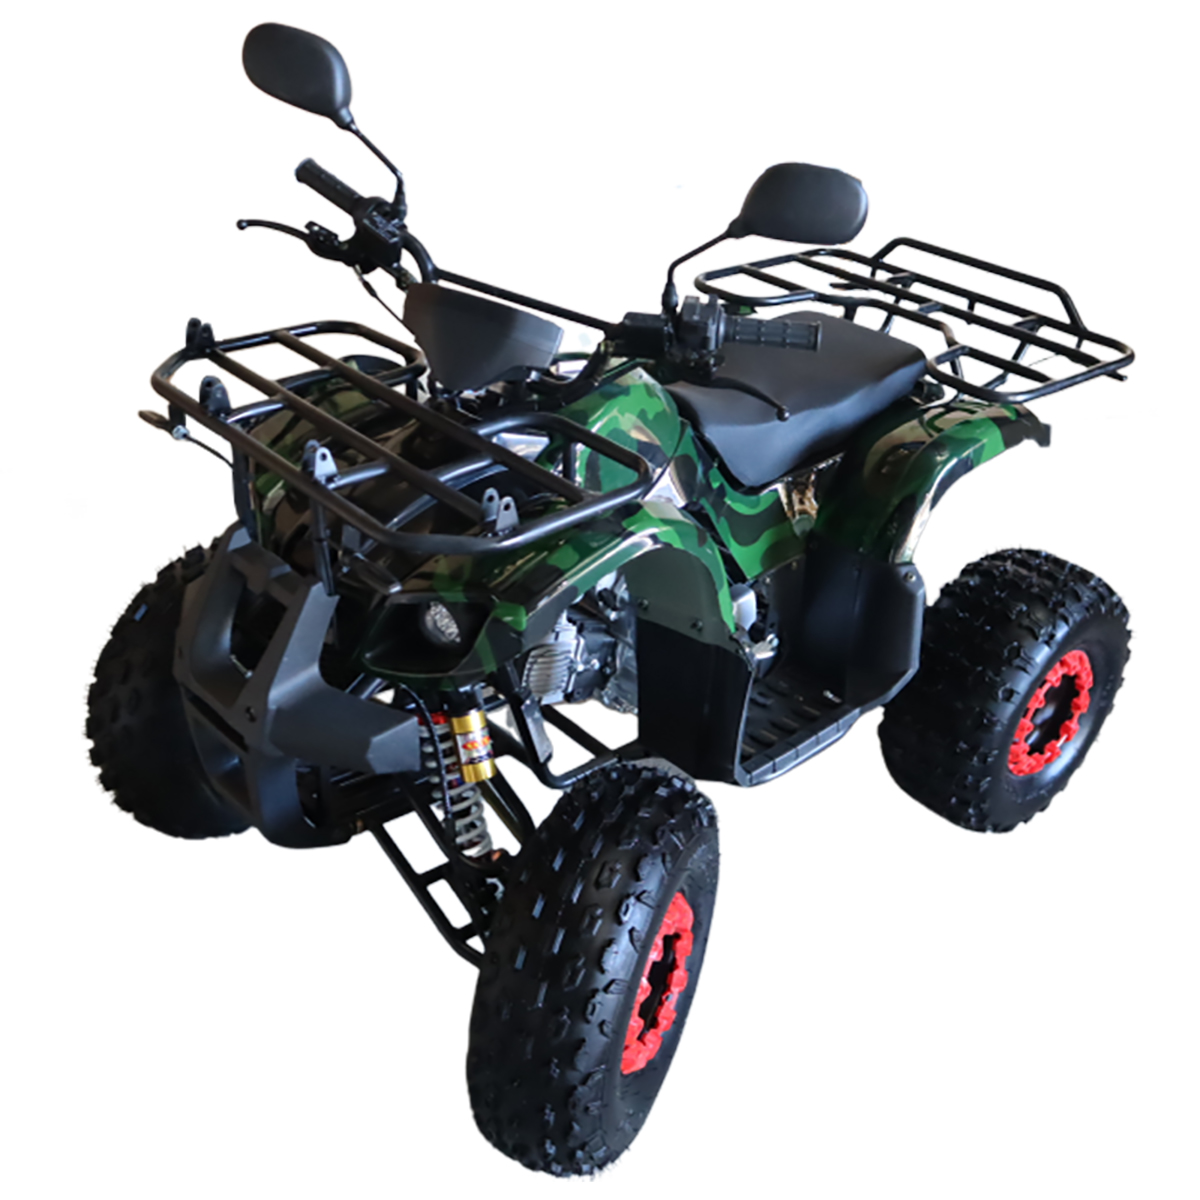 バギー 四輪 49cc ミニ ATV 4サイクルエンジン搭載 RZ-XJ-R : obg02 